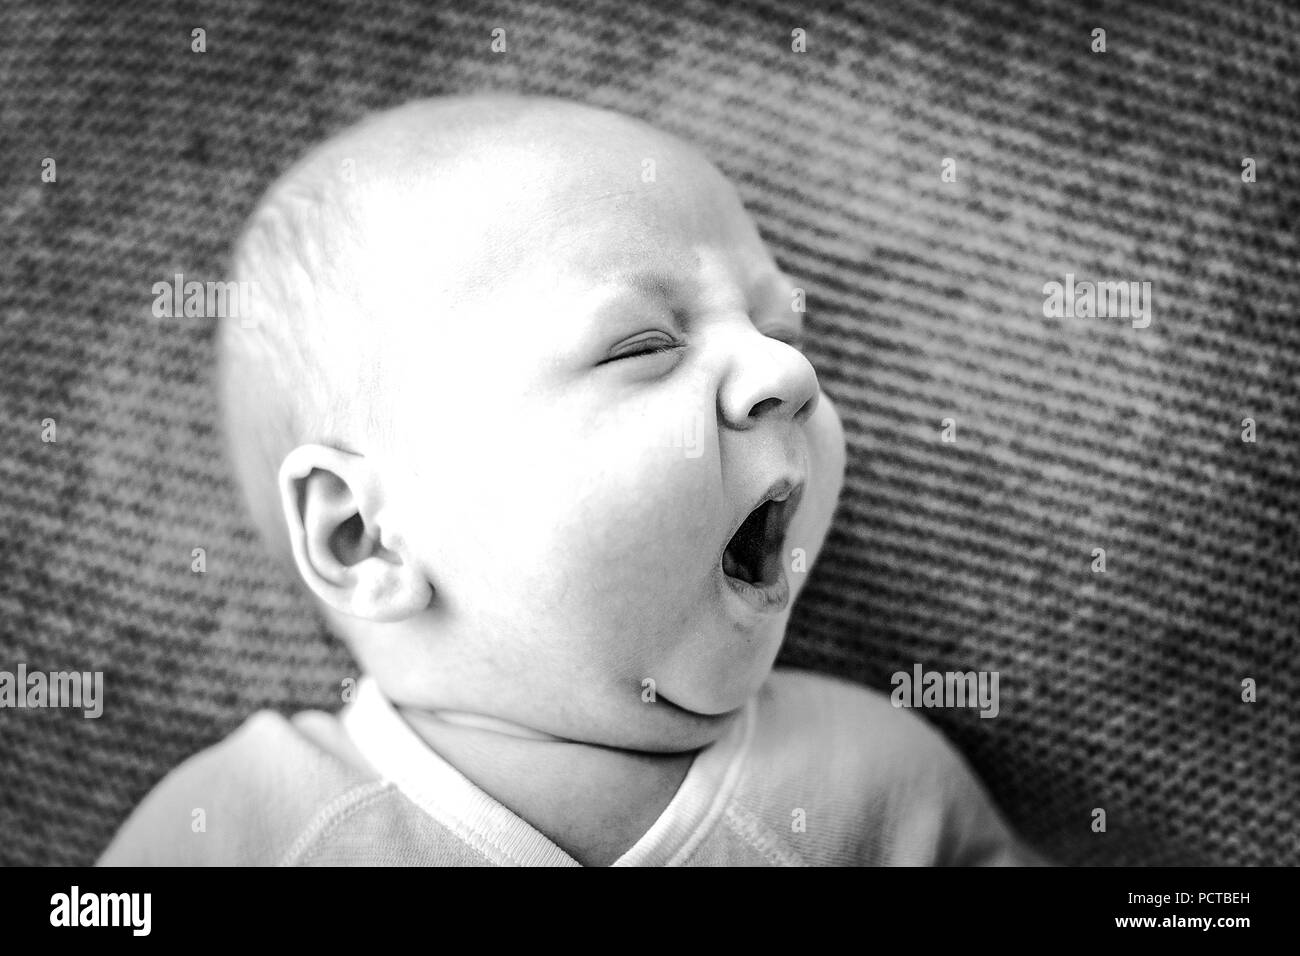 Bébé, garçon, 6 mois, les bâillements, tourné en noir et blanc Banque D'Images